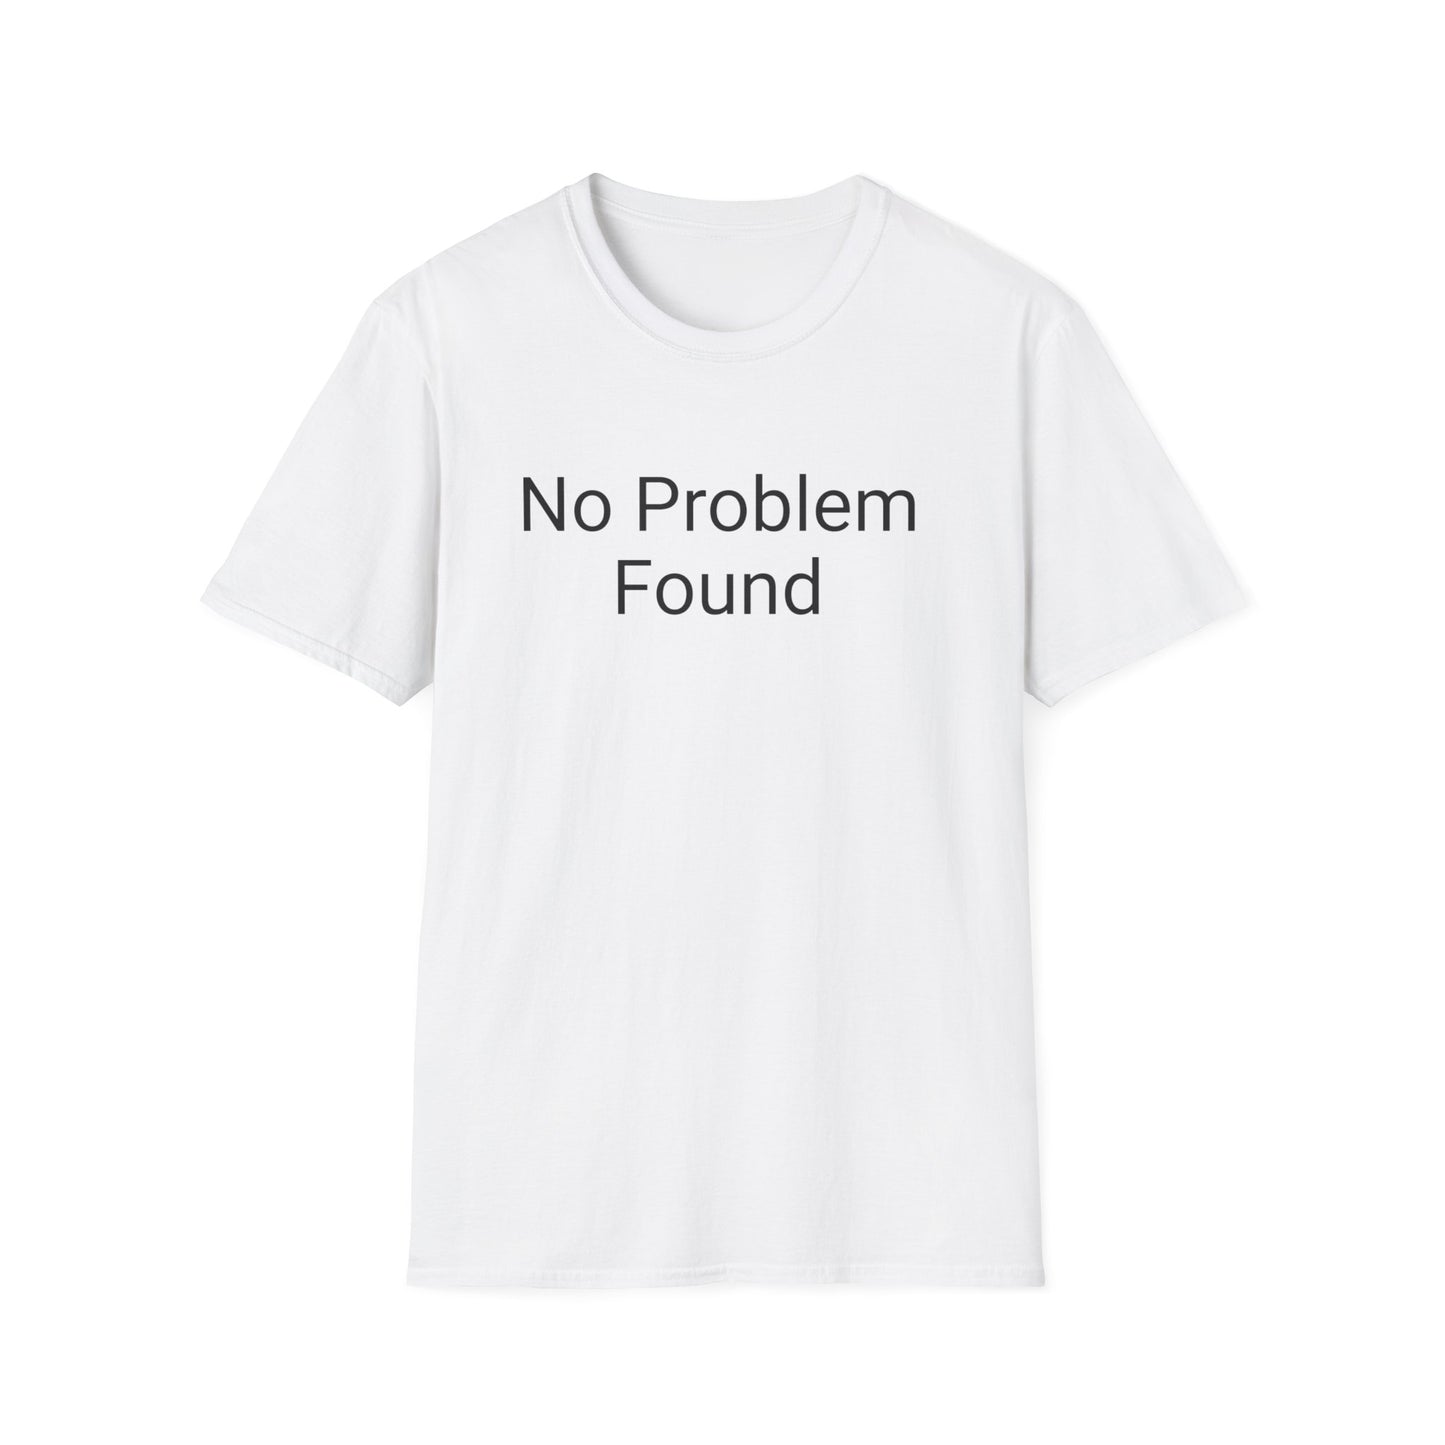 No Problem Found - the shirt